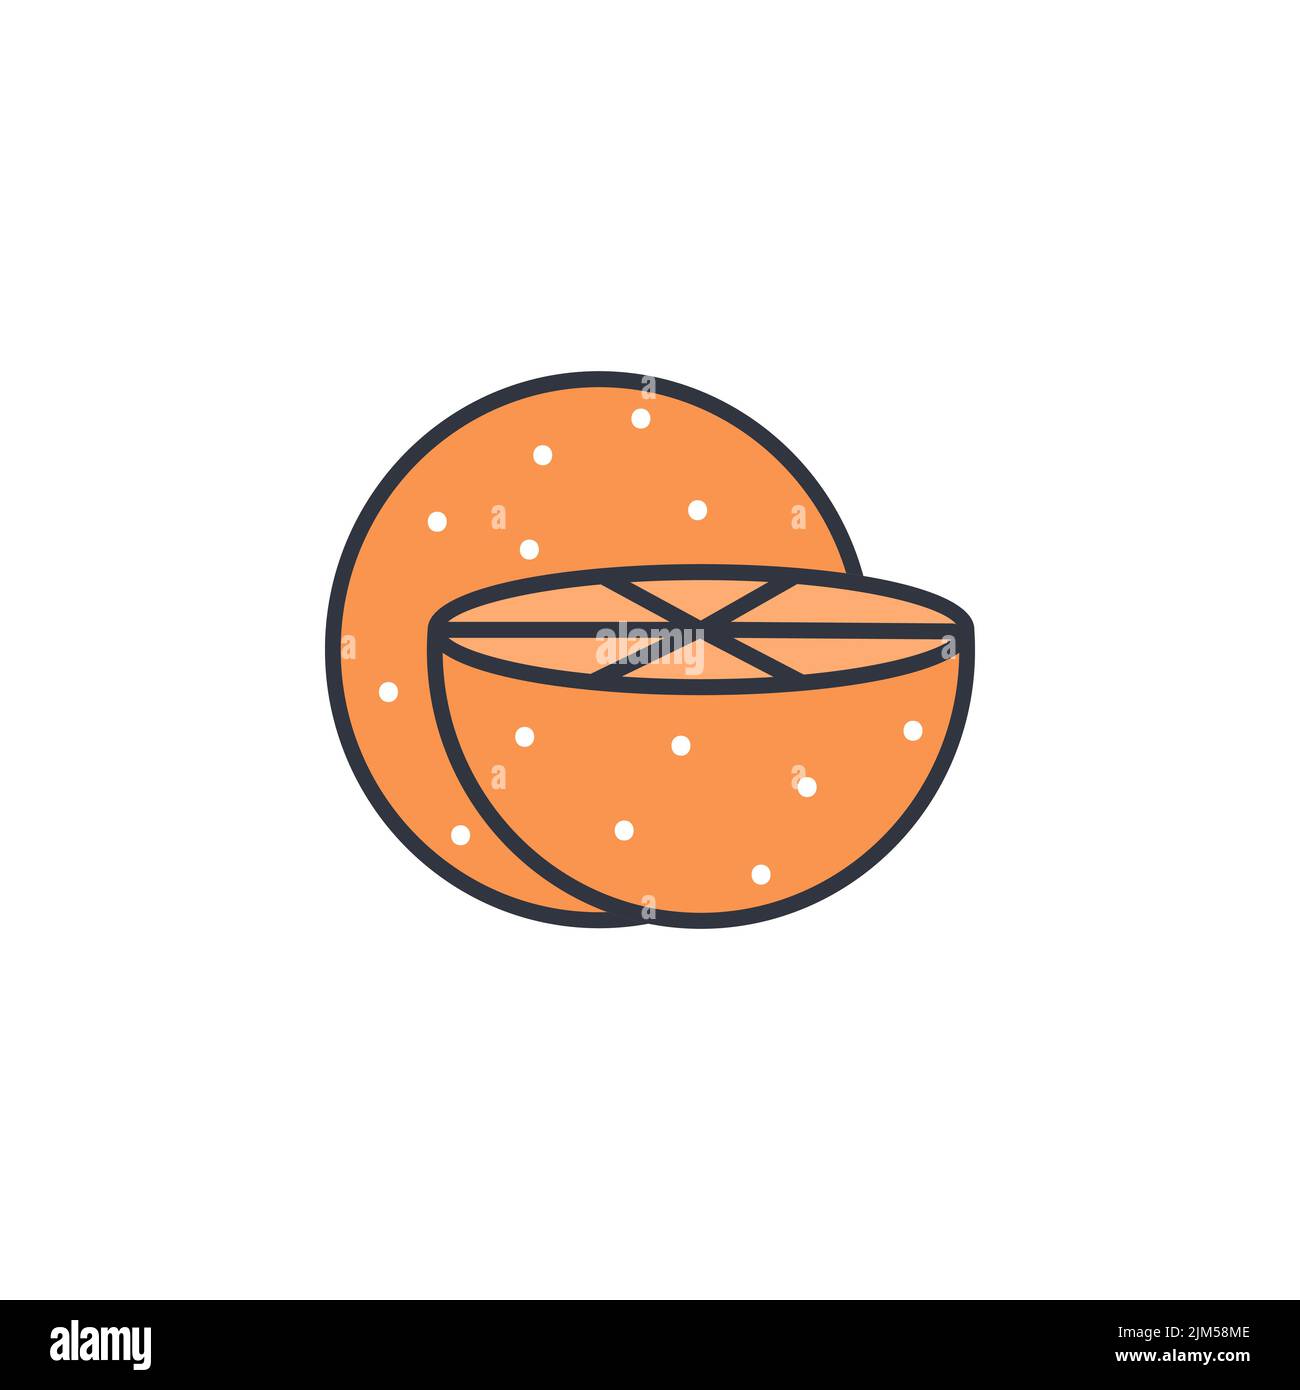 Immagine vettoriale dell'icona a forma di linea di colore arancione. Esotica frutta tropicale immagine semplice. Agrumi, sano sano sano sano cibo sano logo Illustrazione Vettoriale